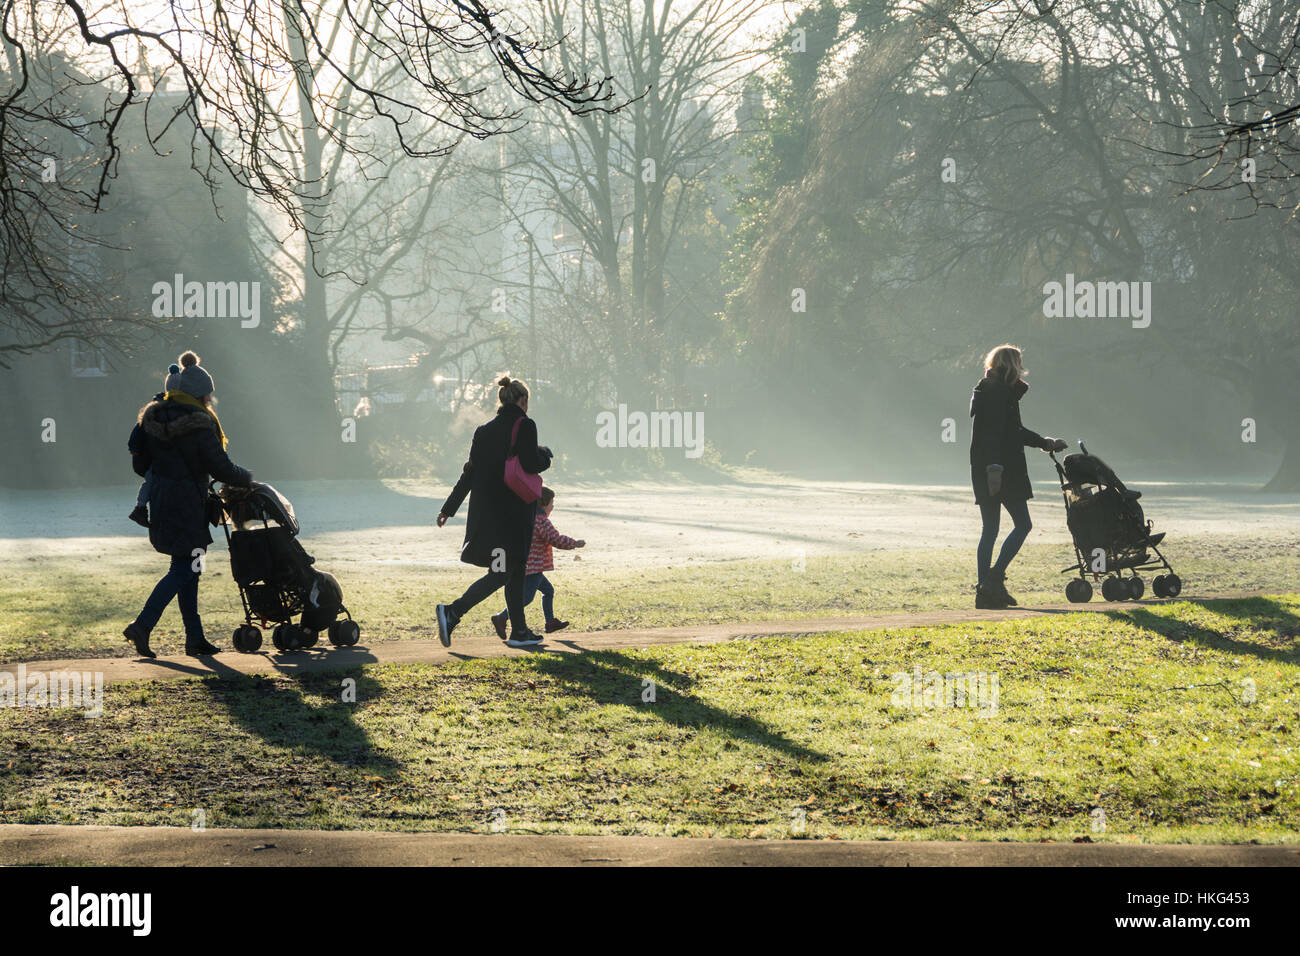 La course de l'école - les mamans marchent leurs enfants à l'école par un matin glacial à Barnes, au sud-ouest de Londres, Angleterre, Royaume-Uni Banque D'Images